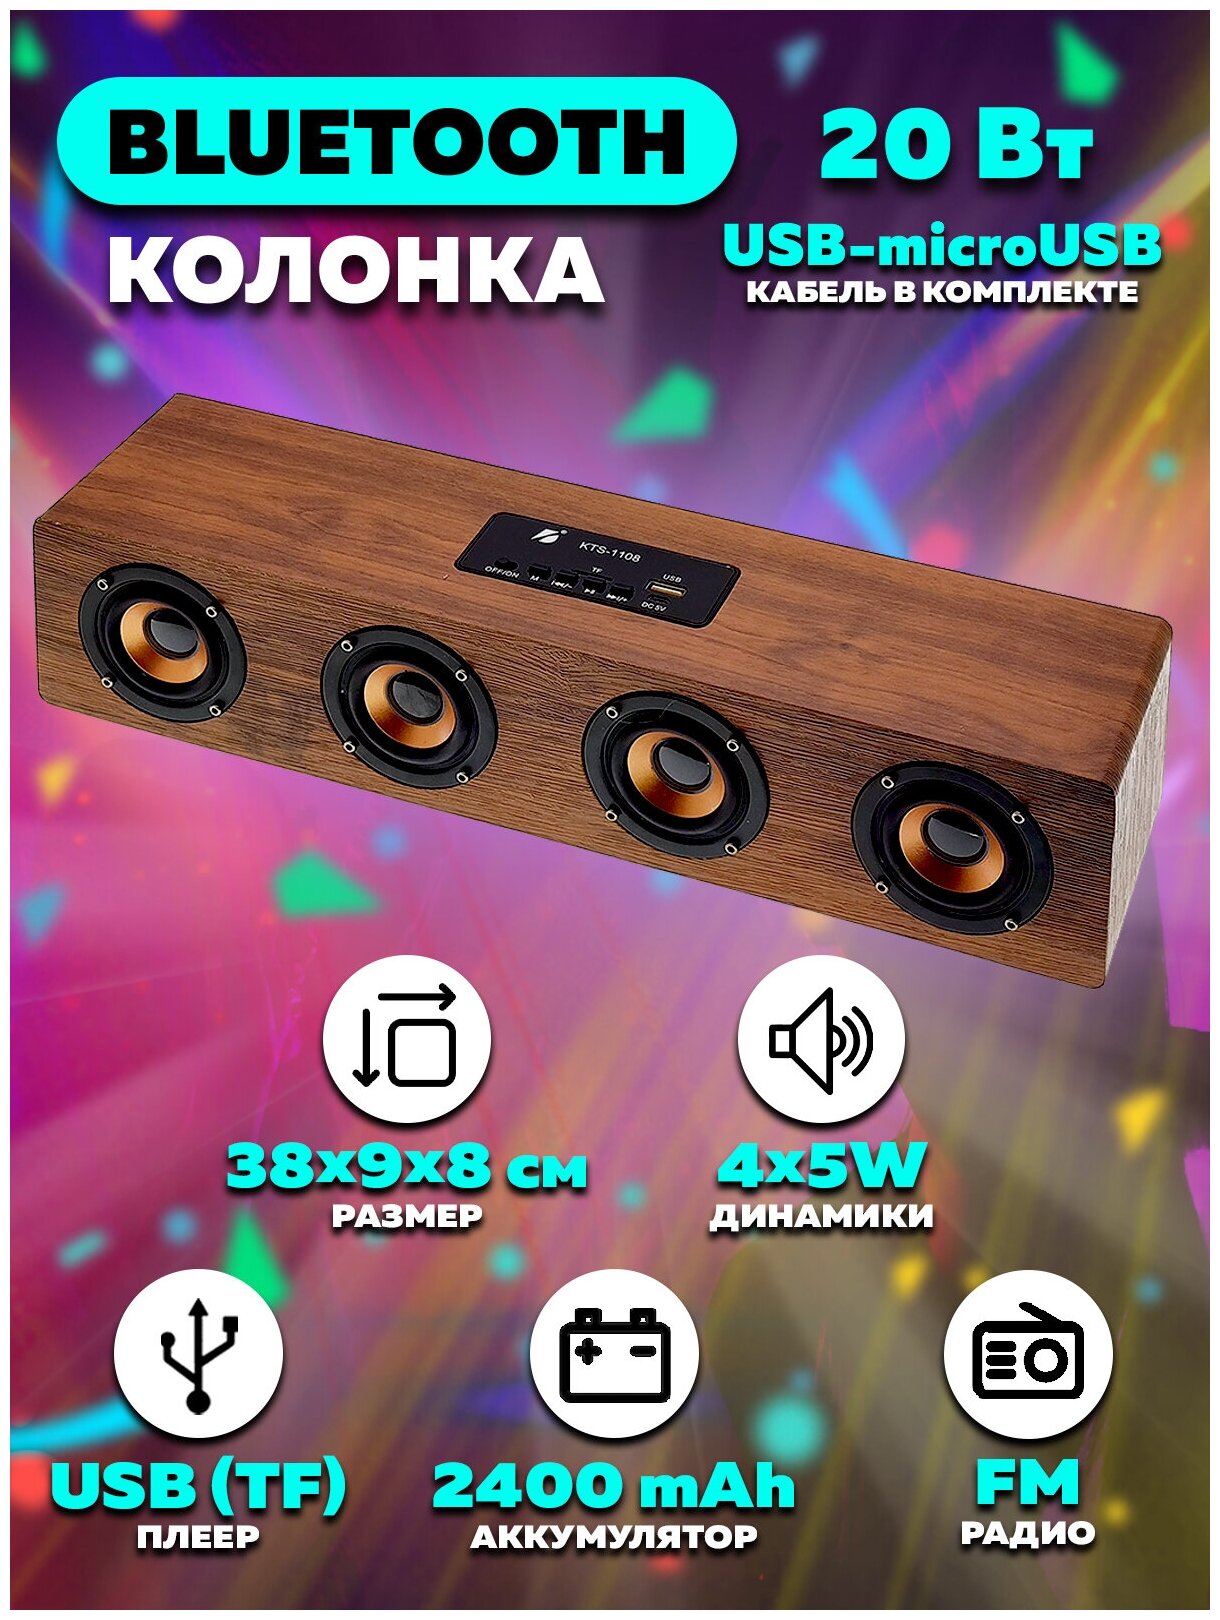 Колонка переносная Bluetooth, FM-радио, USB плеер KTS-11080